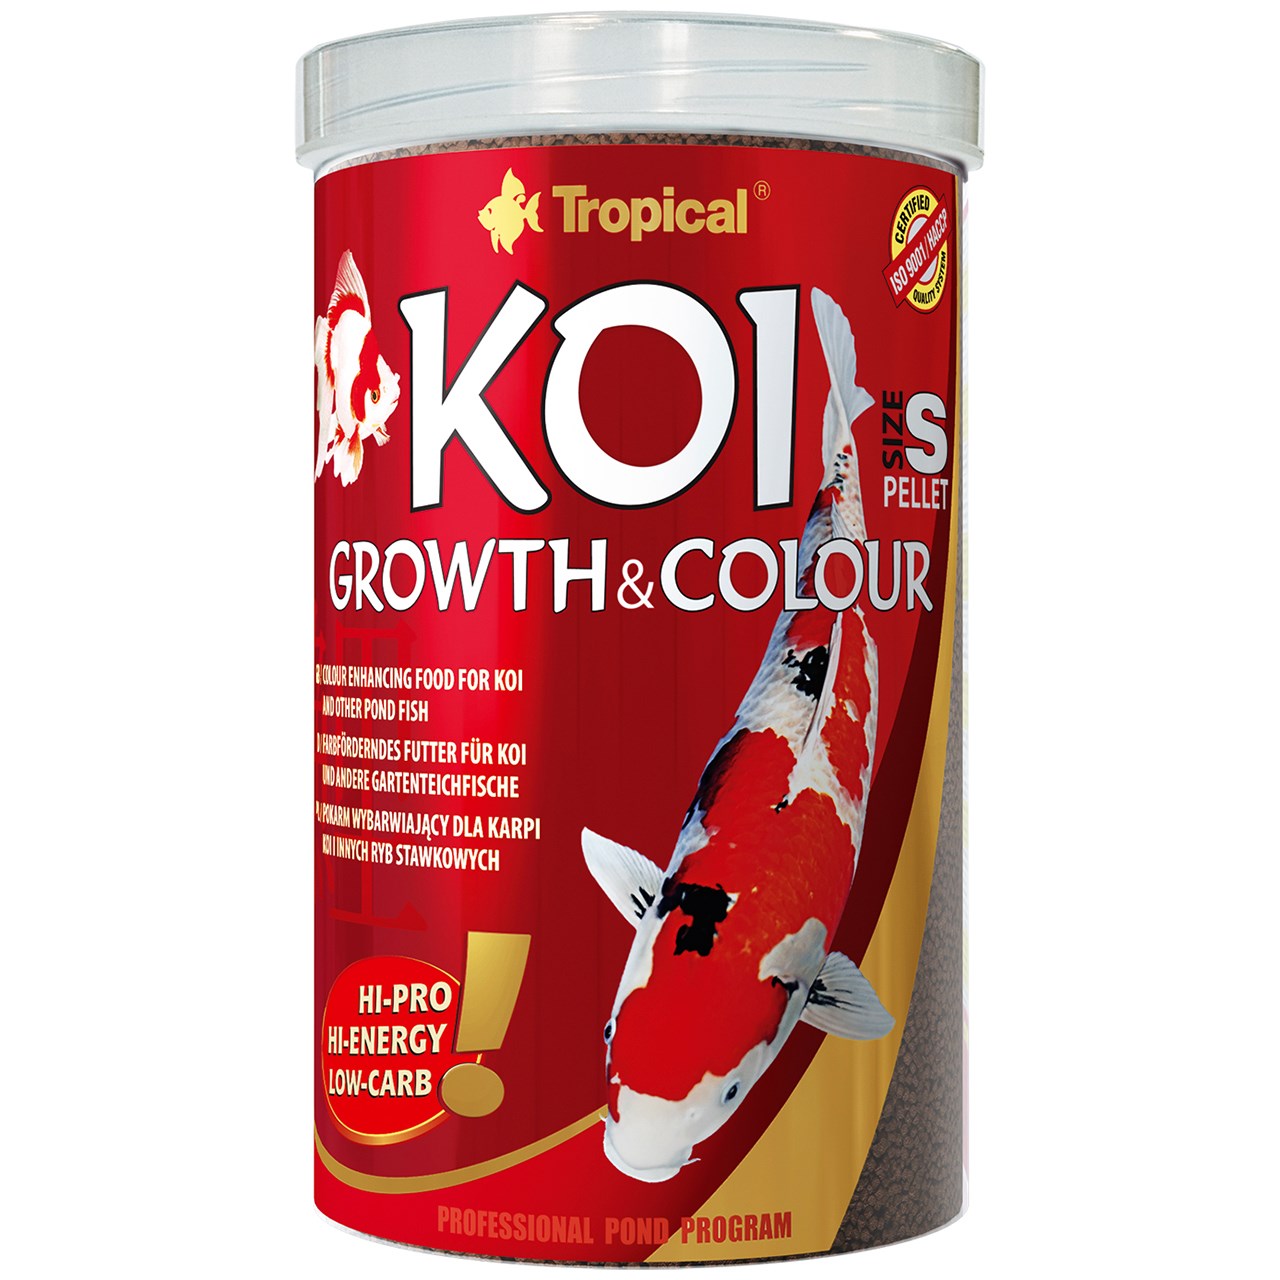 غذای ماهی تروپیکال مدل Koi Growth Colour Pellet Size S وزن 400 گرم